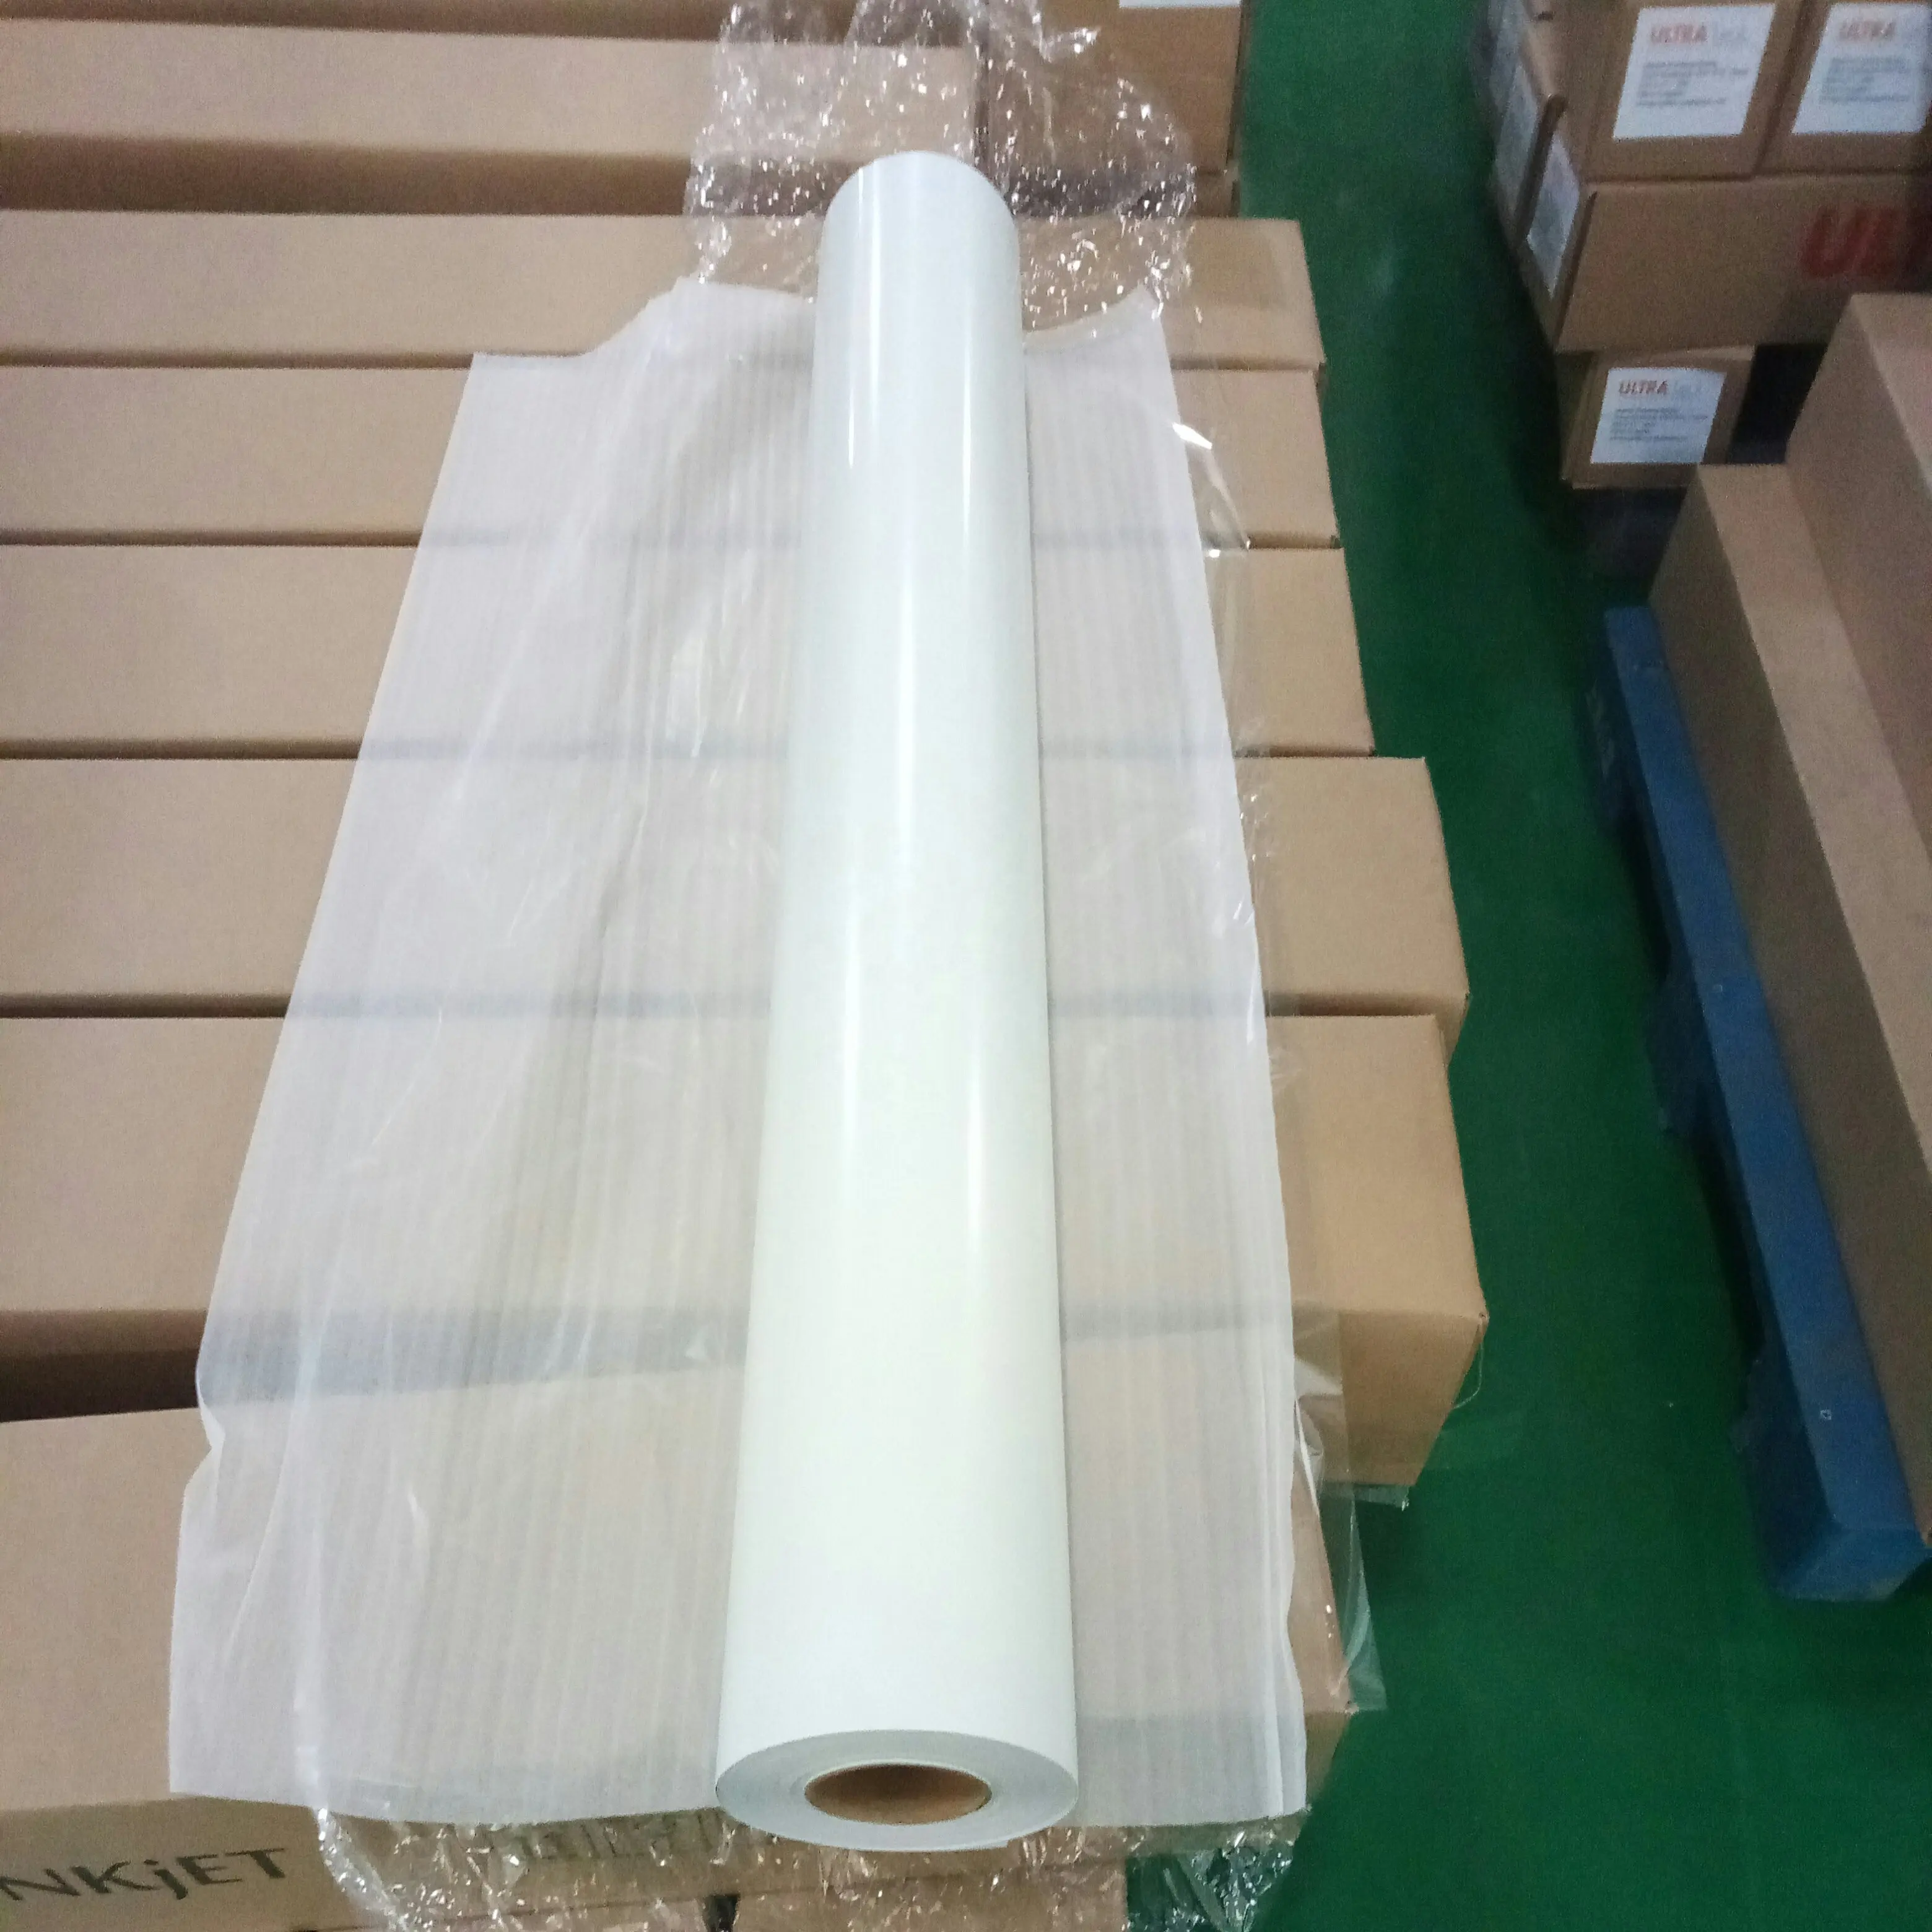 Rouleaux de Vinyle Auto-adhésifs médias jet d'encre auto-adhésif vinyle flex impression papier synthétique